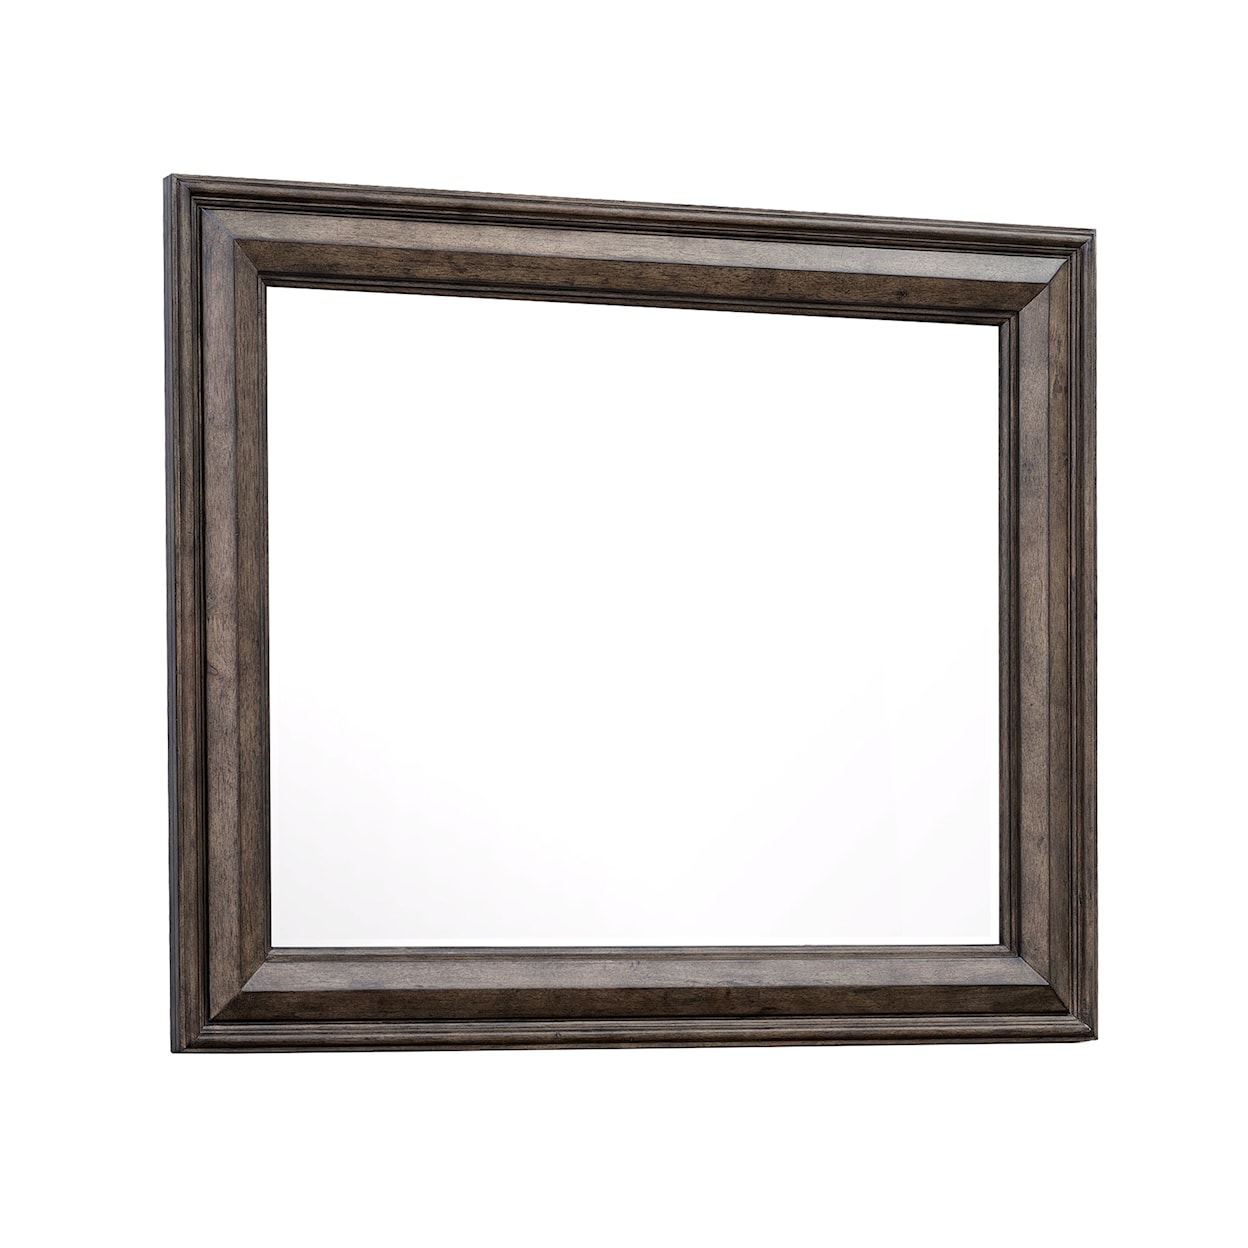 Pulaski Furniture Woodbury Rectangular Mirror